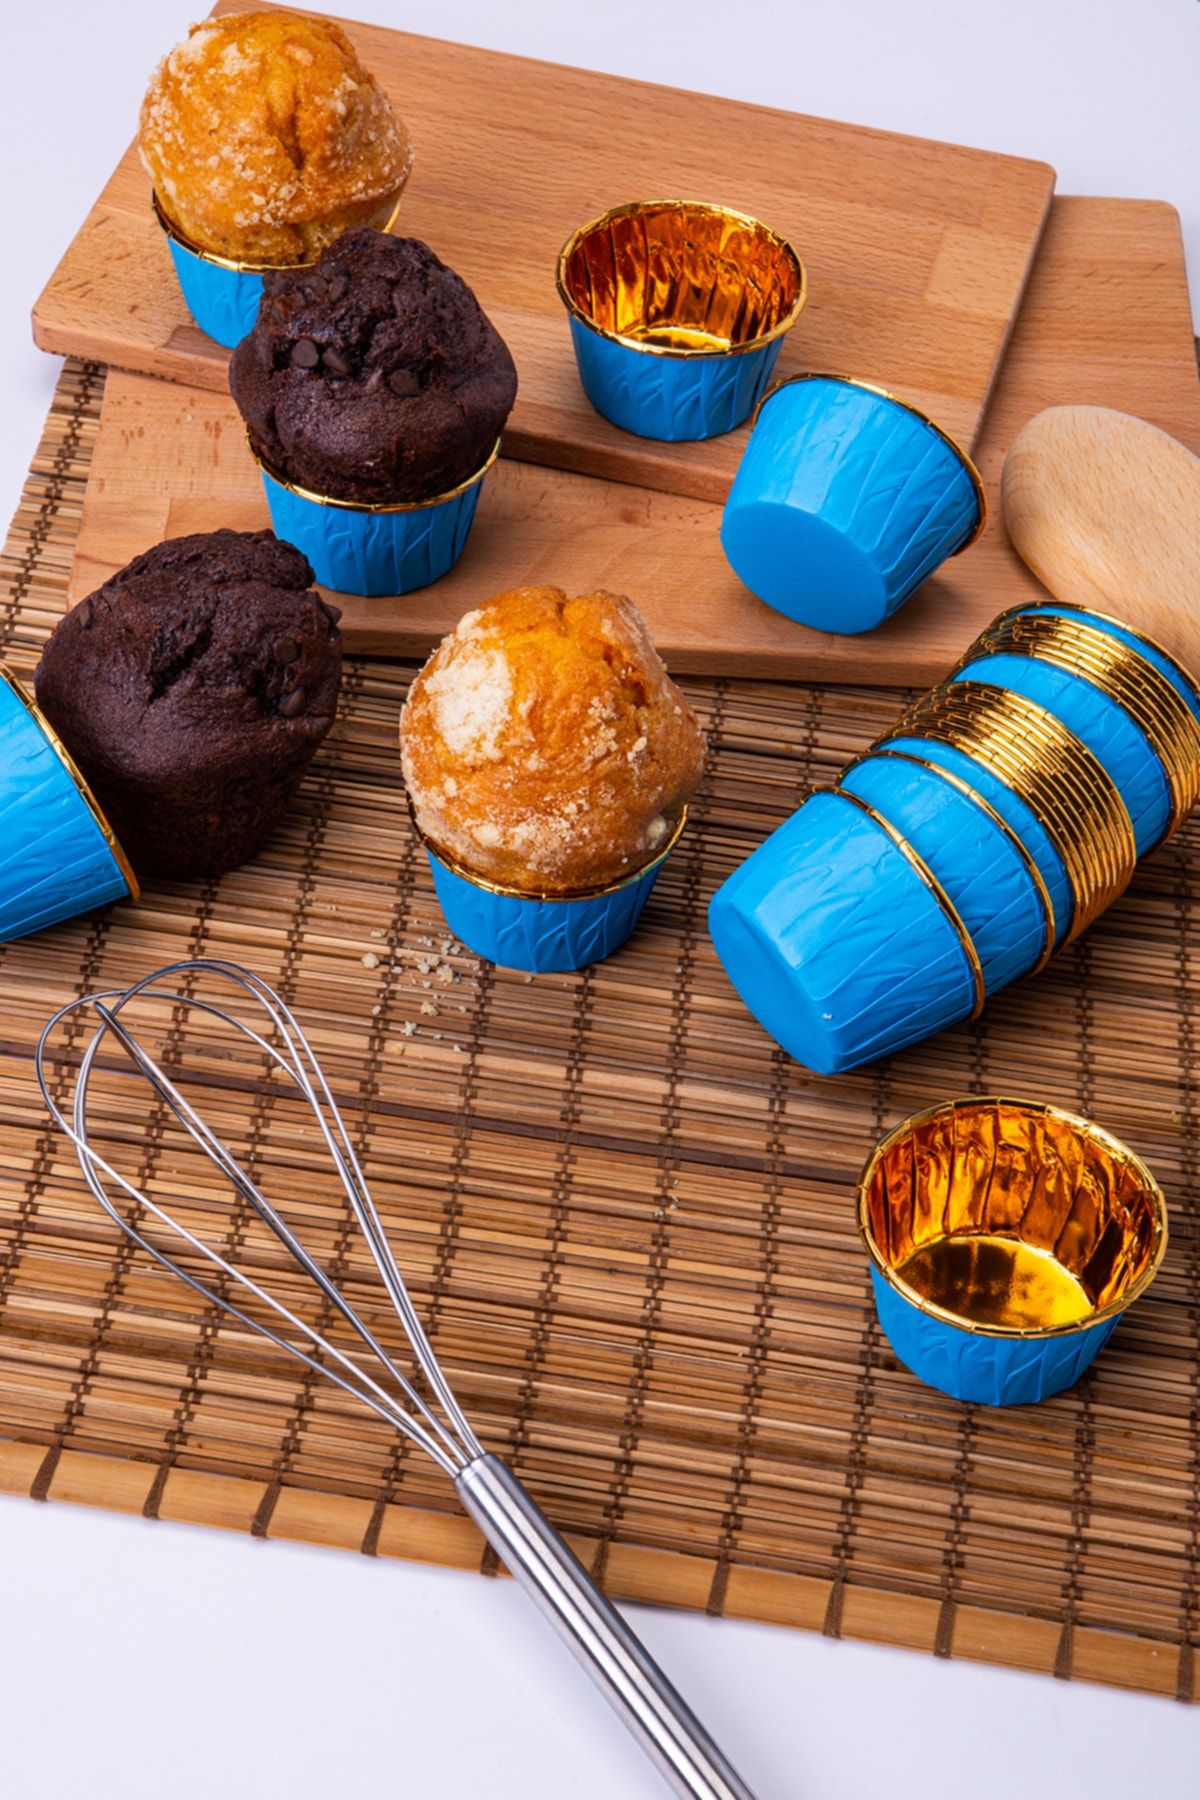 Huzur Party Store Mavi Parlak Karton 25'li Kek Kalıbı Kenarı Gold Kaplama Fırında Dağılmayan 6.5x4 cm Muffin Cupcake